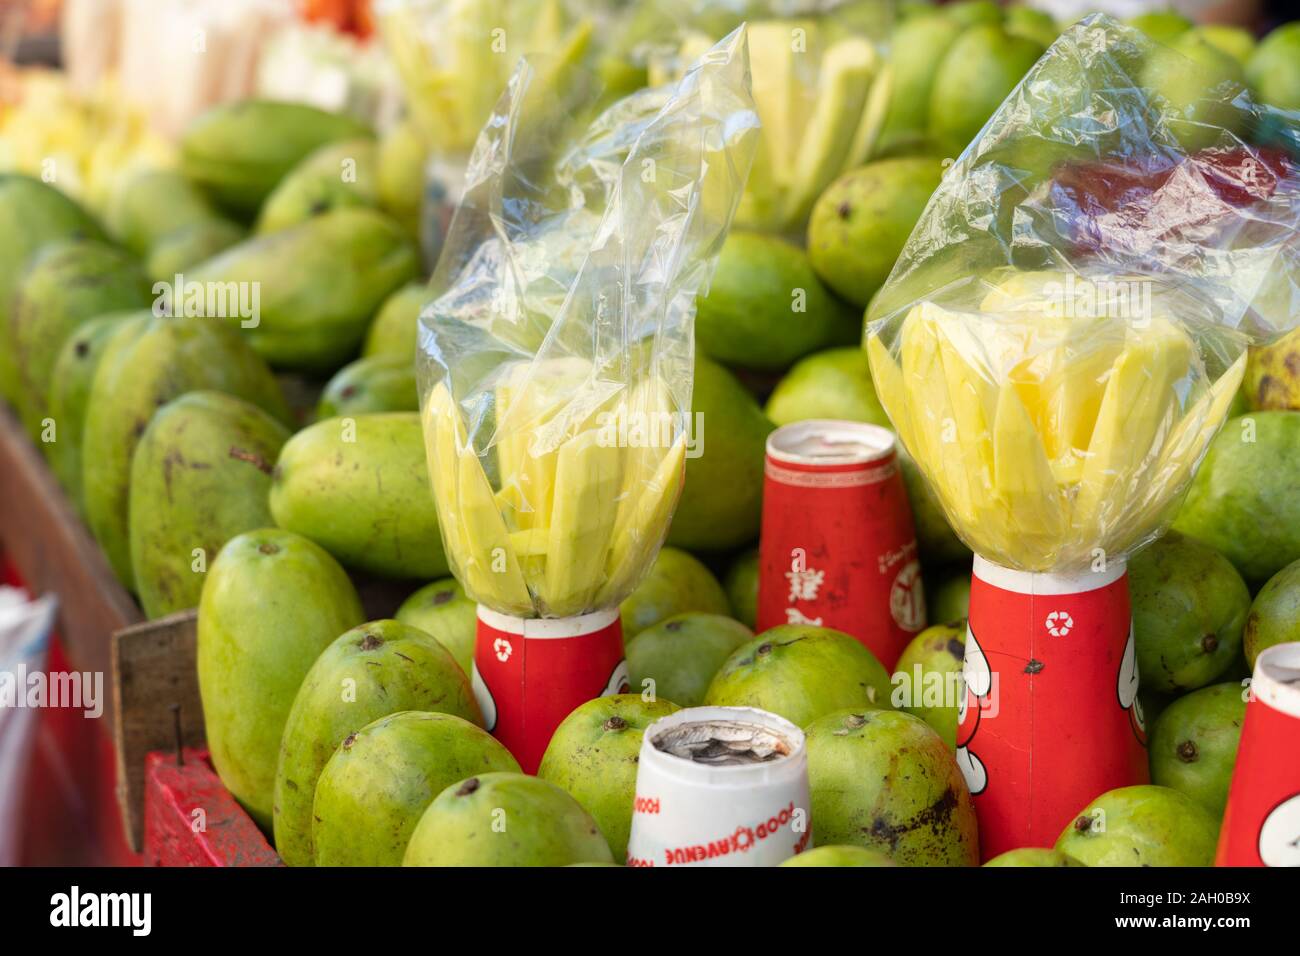 Un preferito snack street food comunemente venduti nelle Filippine,fette di acerbi green mango che hanno un sapore amaro. Normalmente cosparsi di sale quando Foto Stock